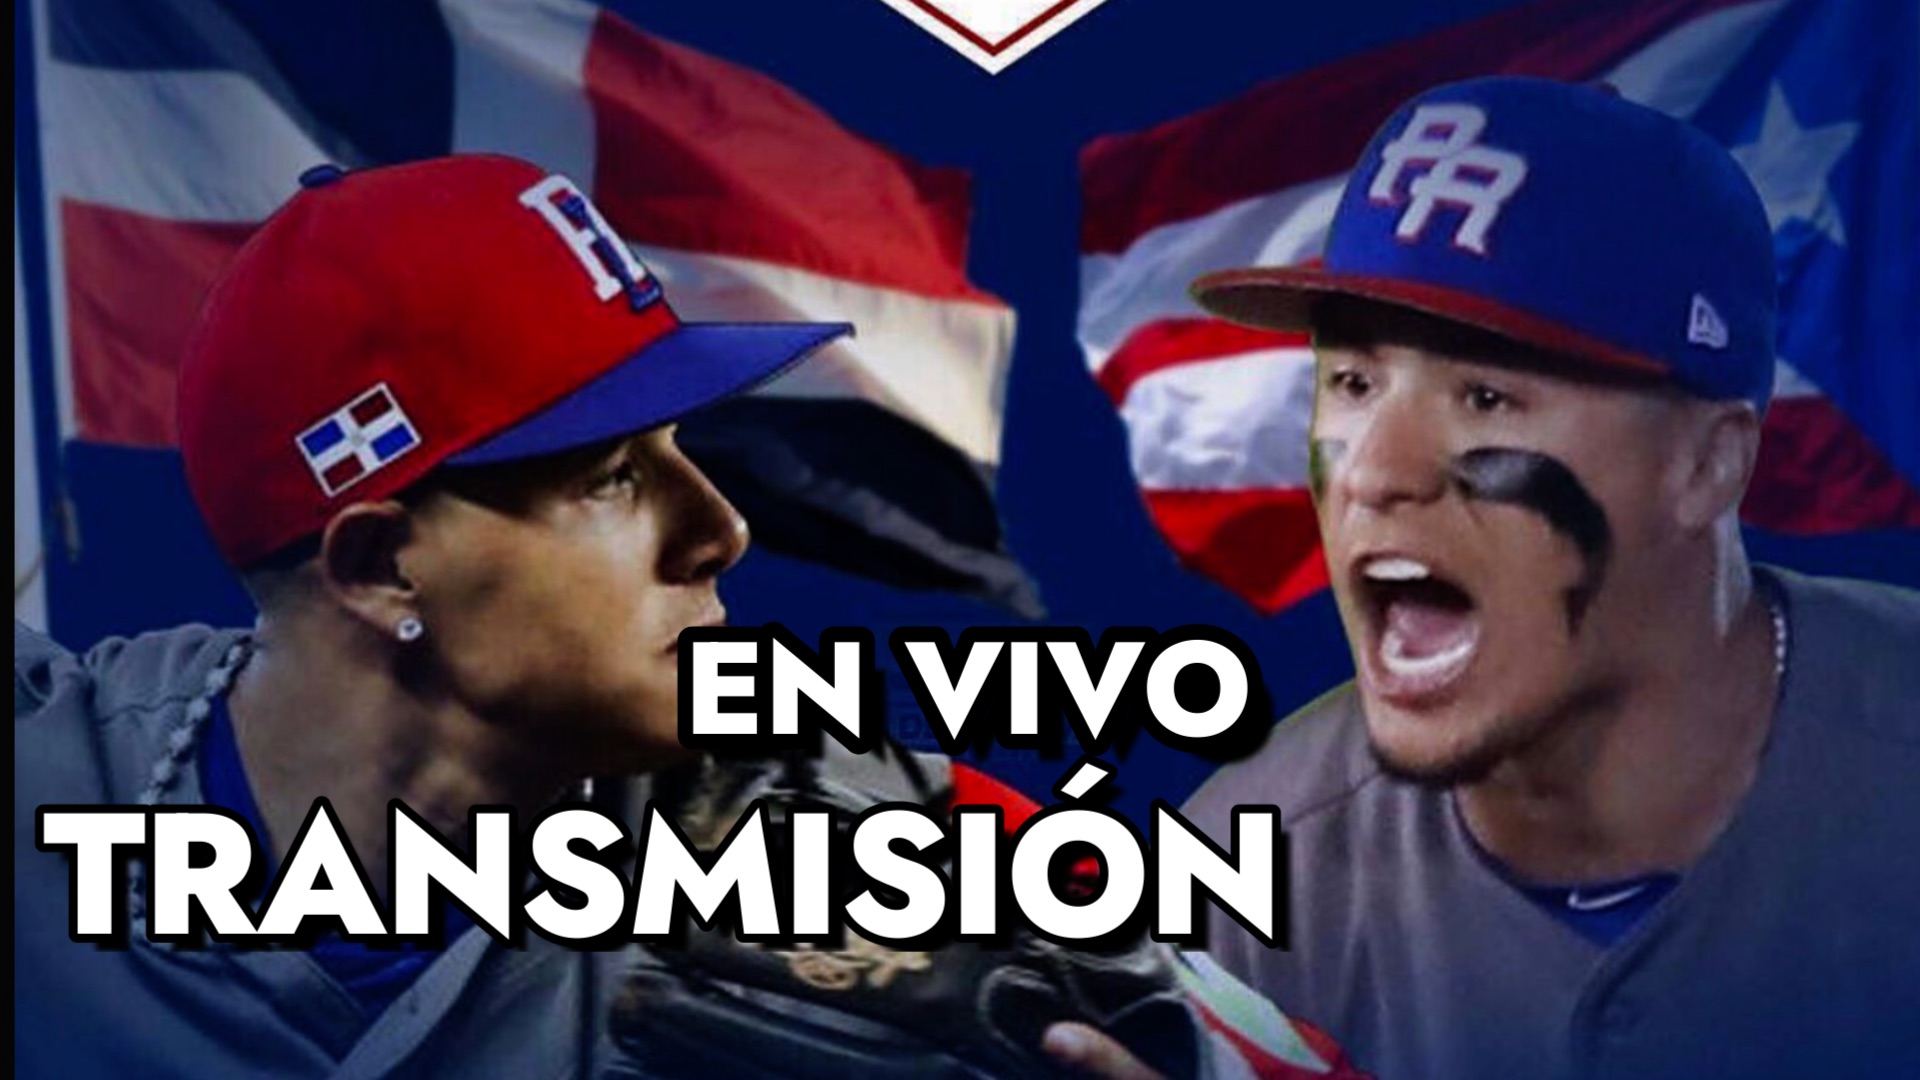 República Dominicana vs Puerto Rico en vivo Clásico Mundial de Béisbol